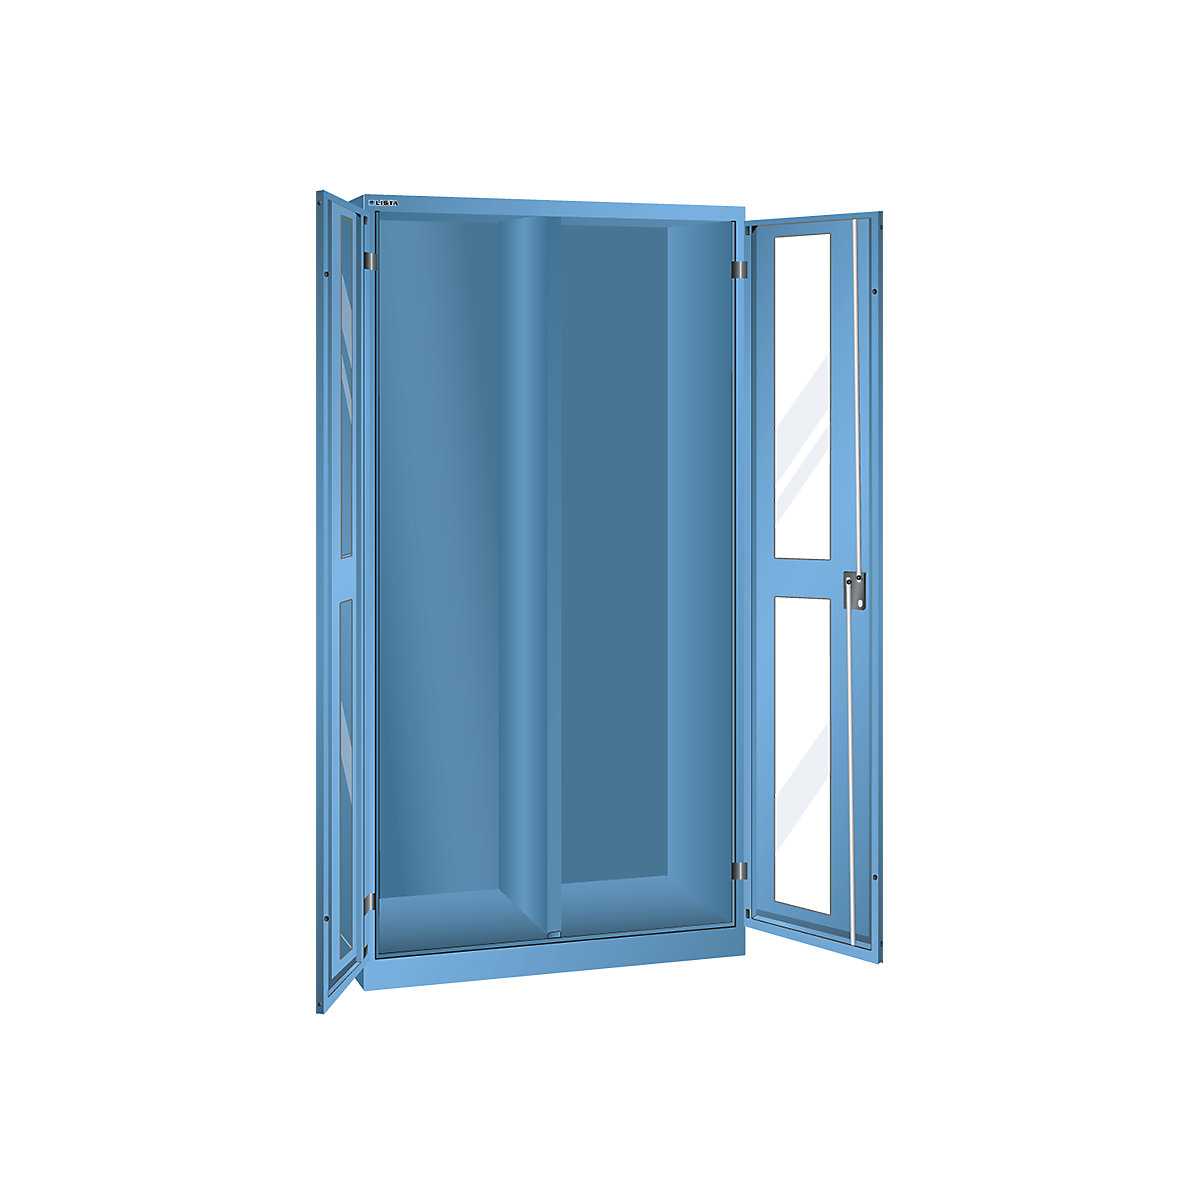 Armário com janelas de visualização, AxLxP 1950 x 1000 x 580 mm – LISTA